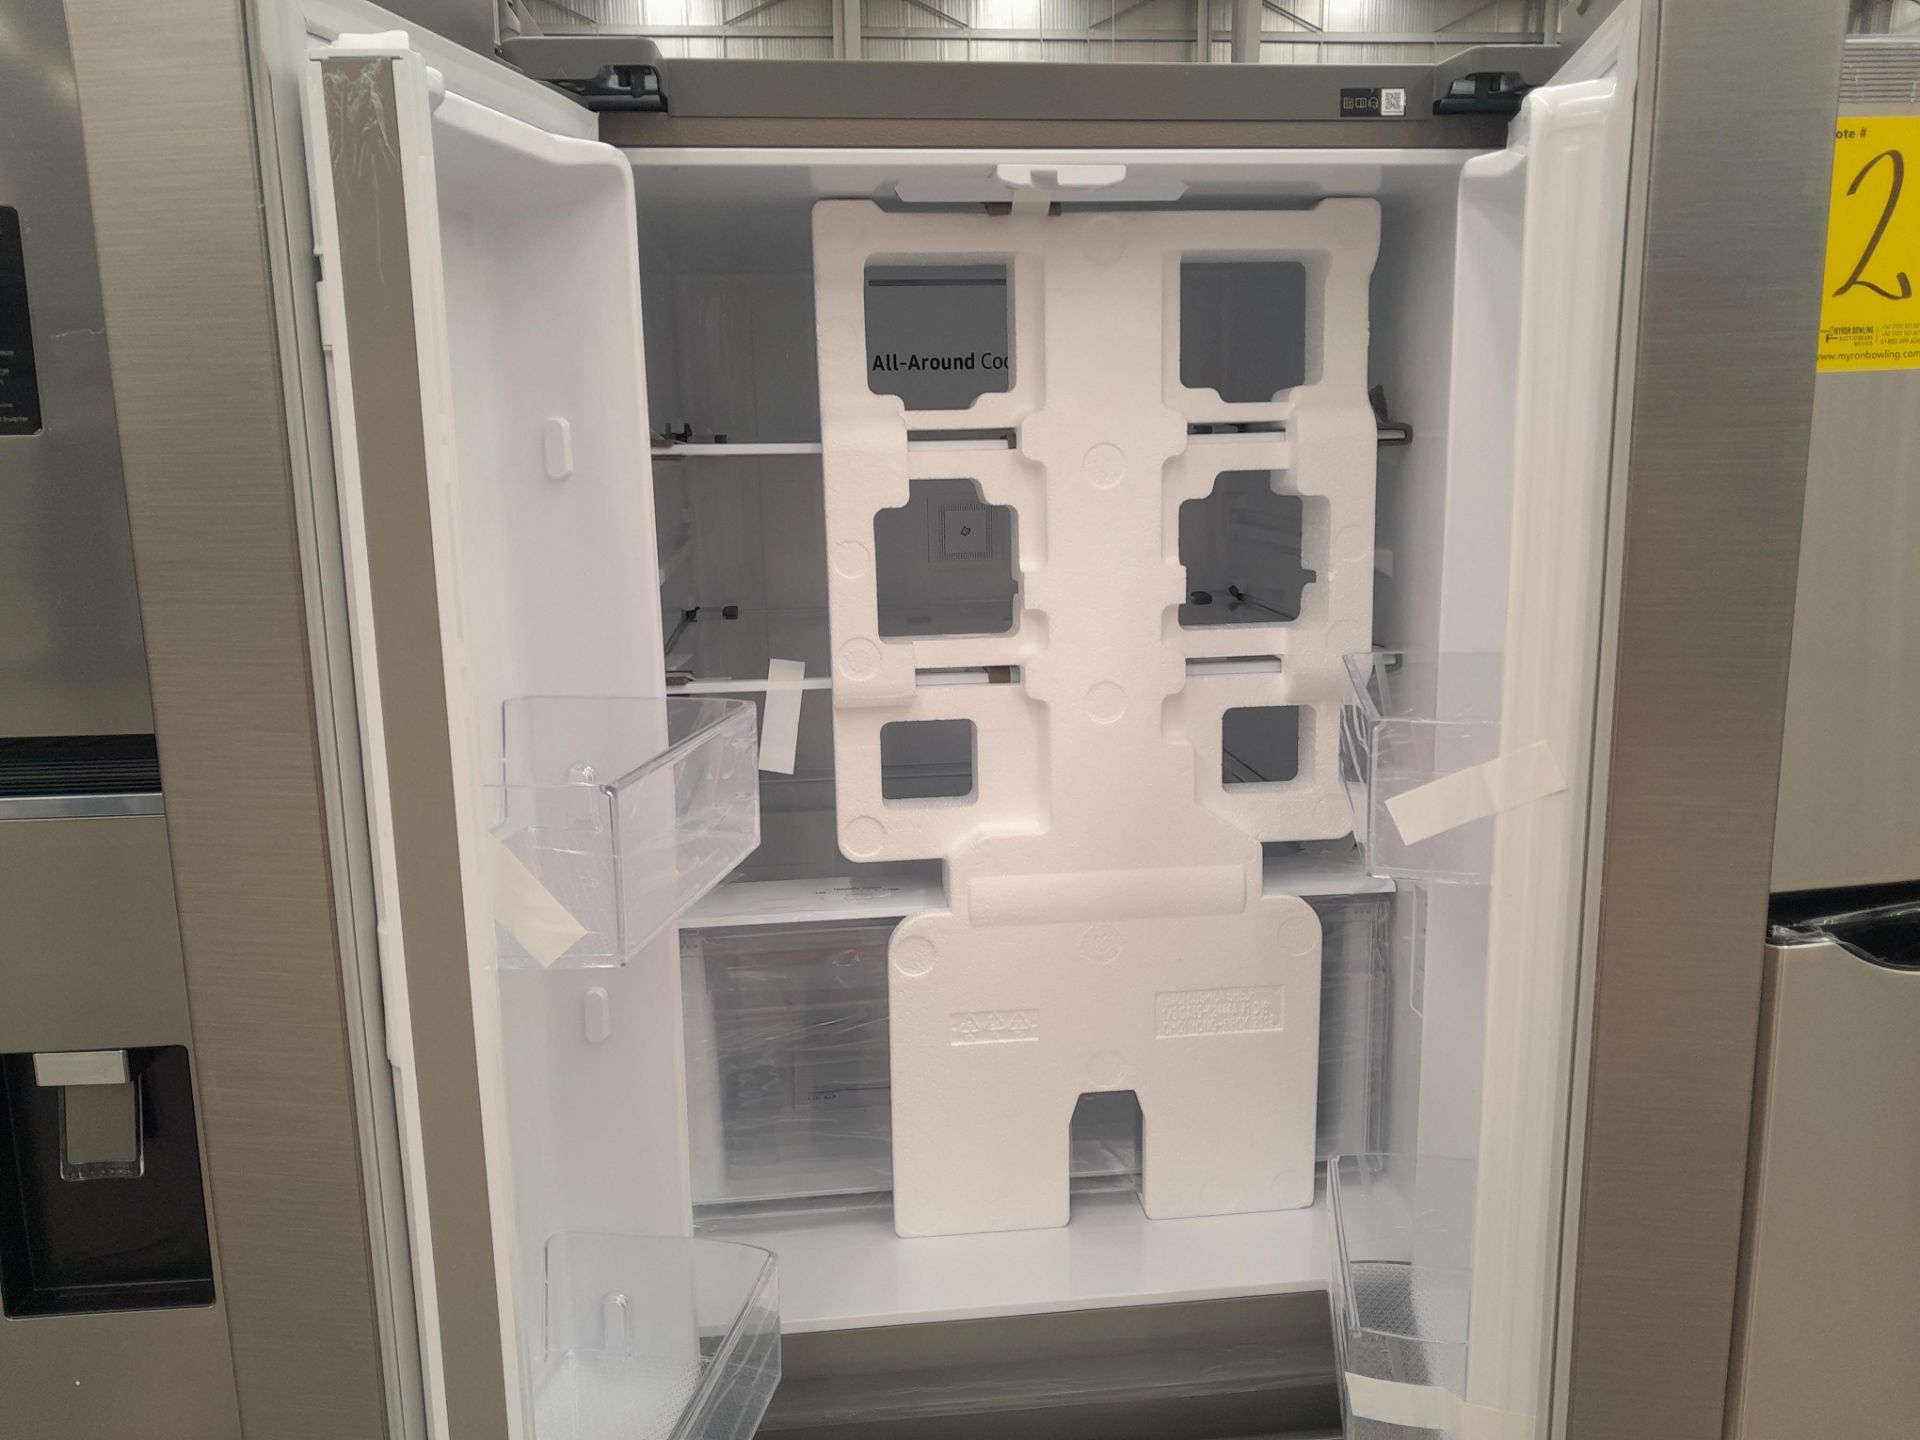 (NUEVO) Lote de 1 Refrigerador Marca SAMSUNG, Modelo RF22A4010S9, Serie 02400N, Color GRIS - Image 4 of 5